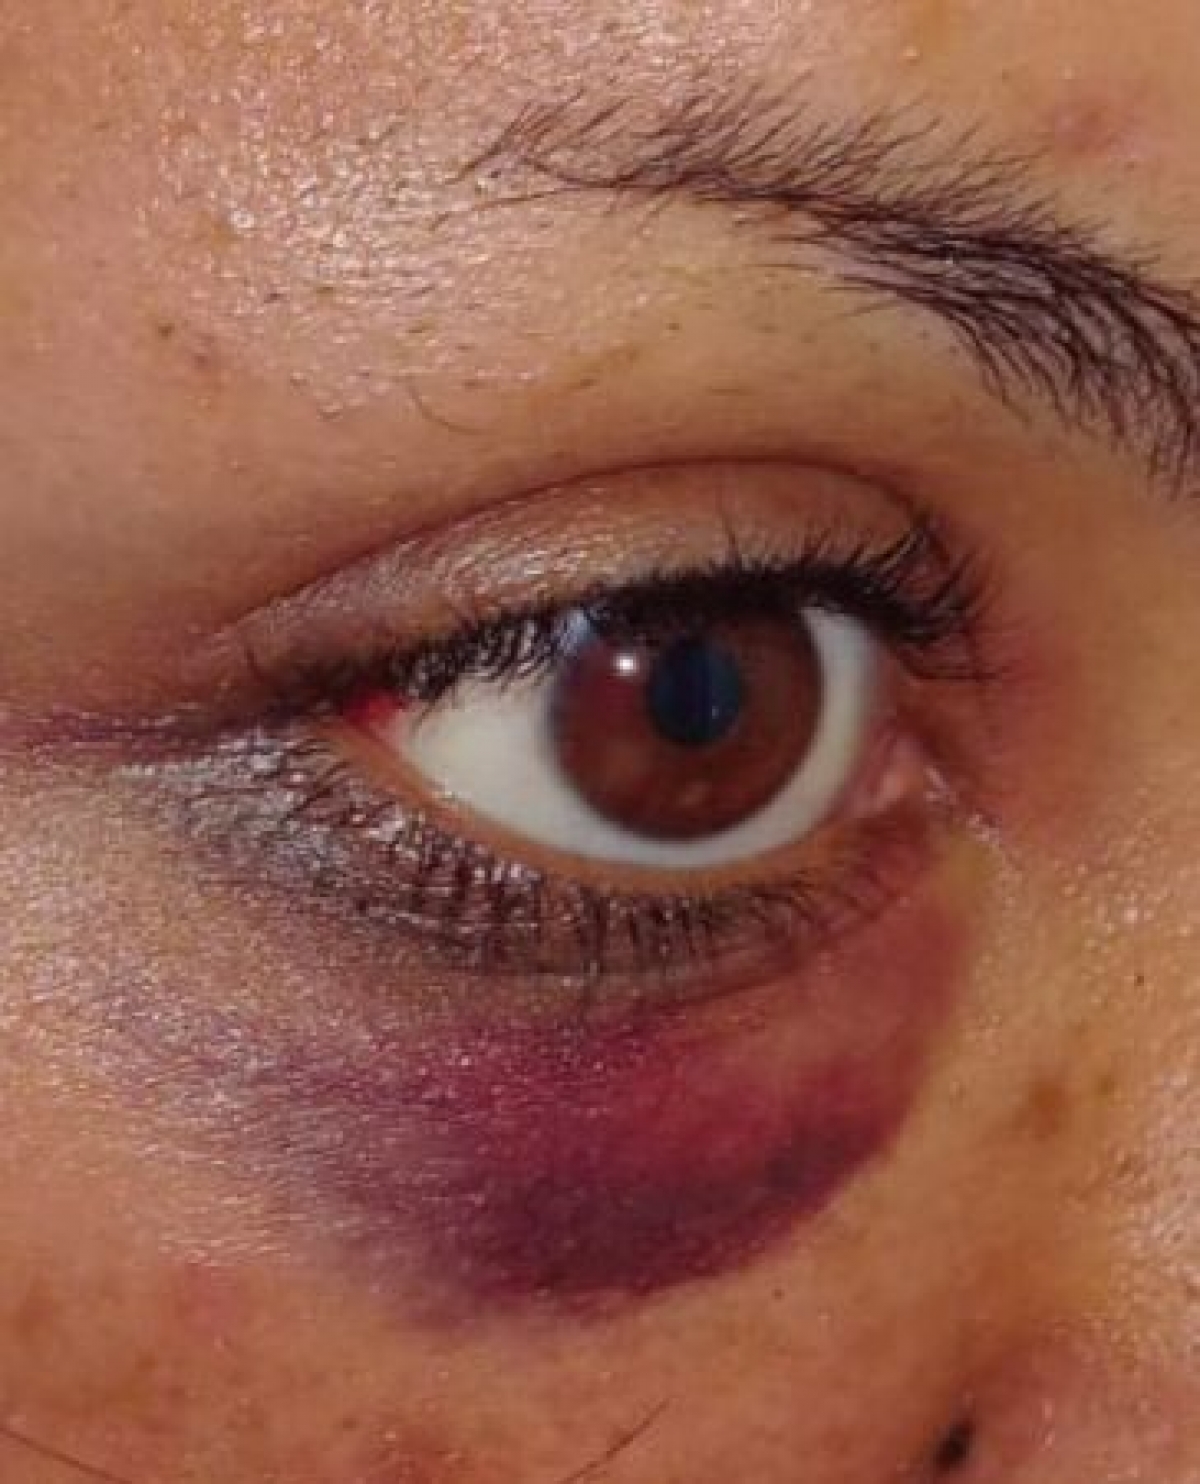 Hematoma y derrame ocular en ojo derecho de la victima